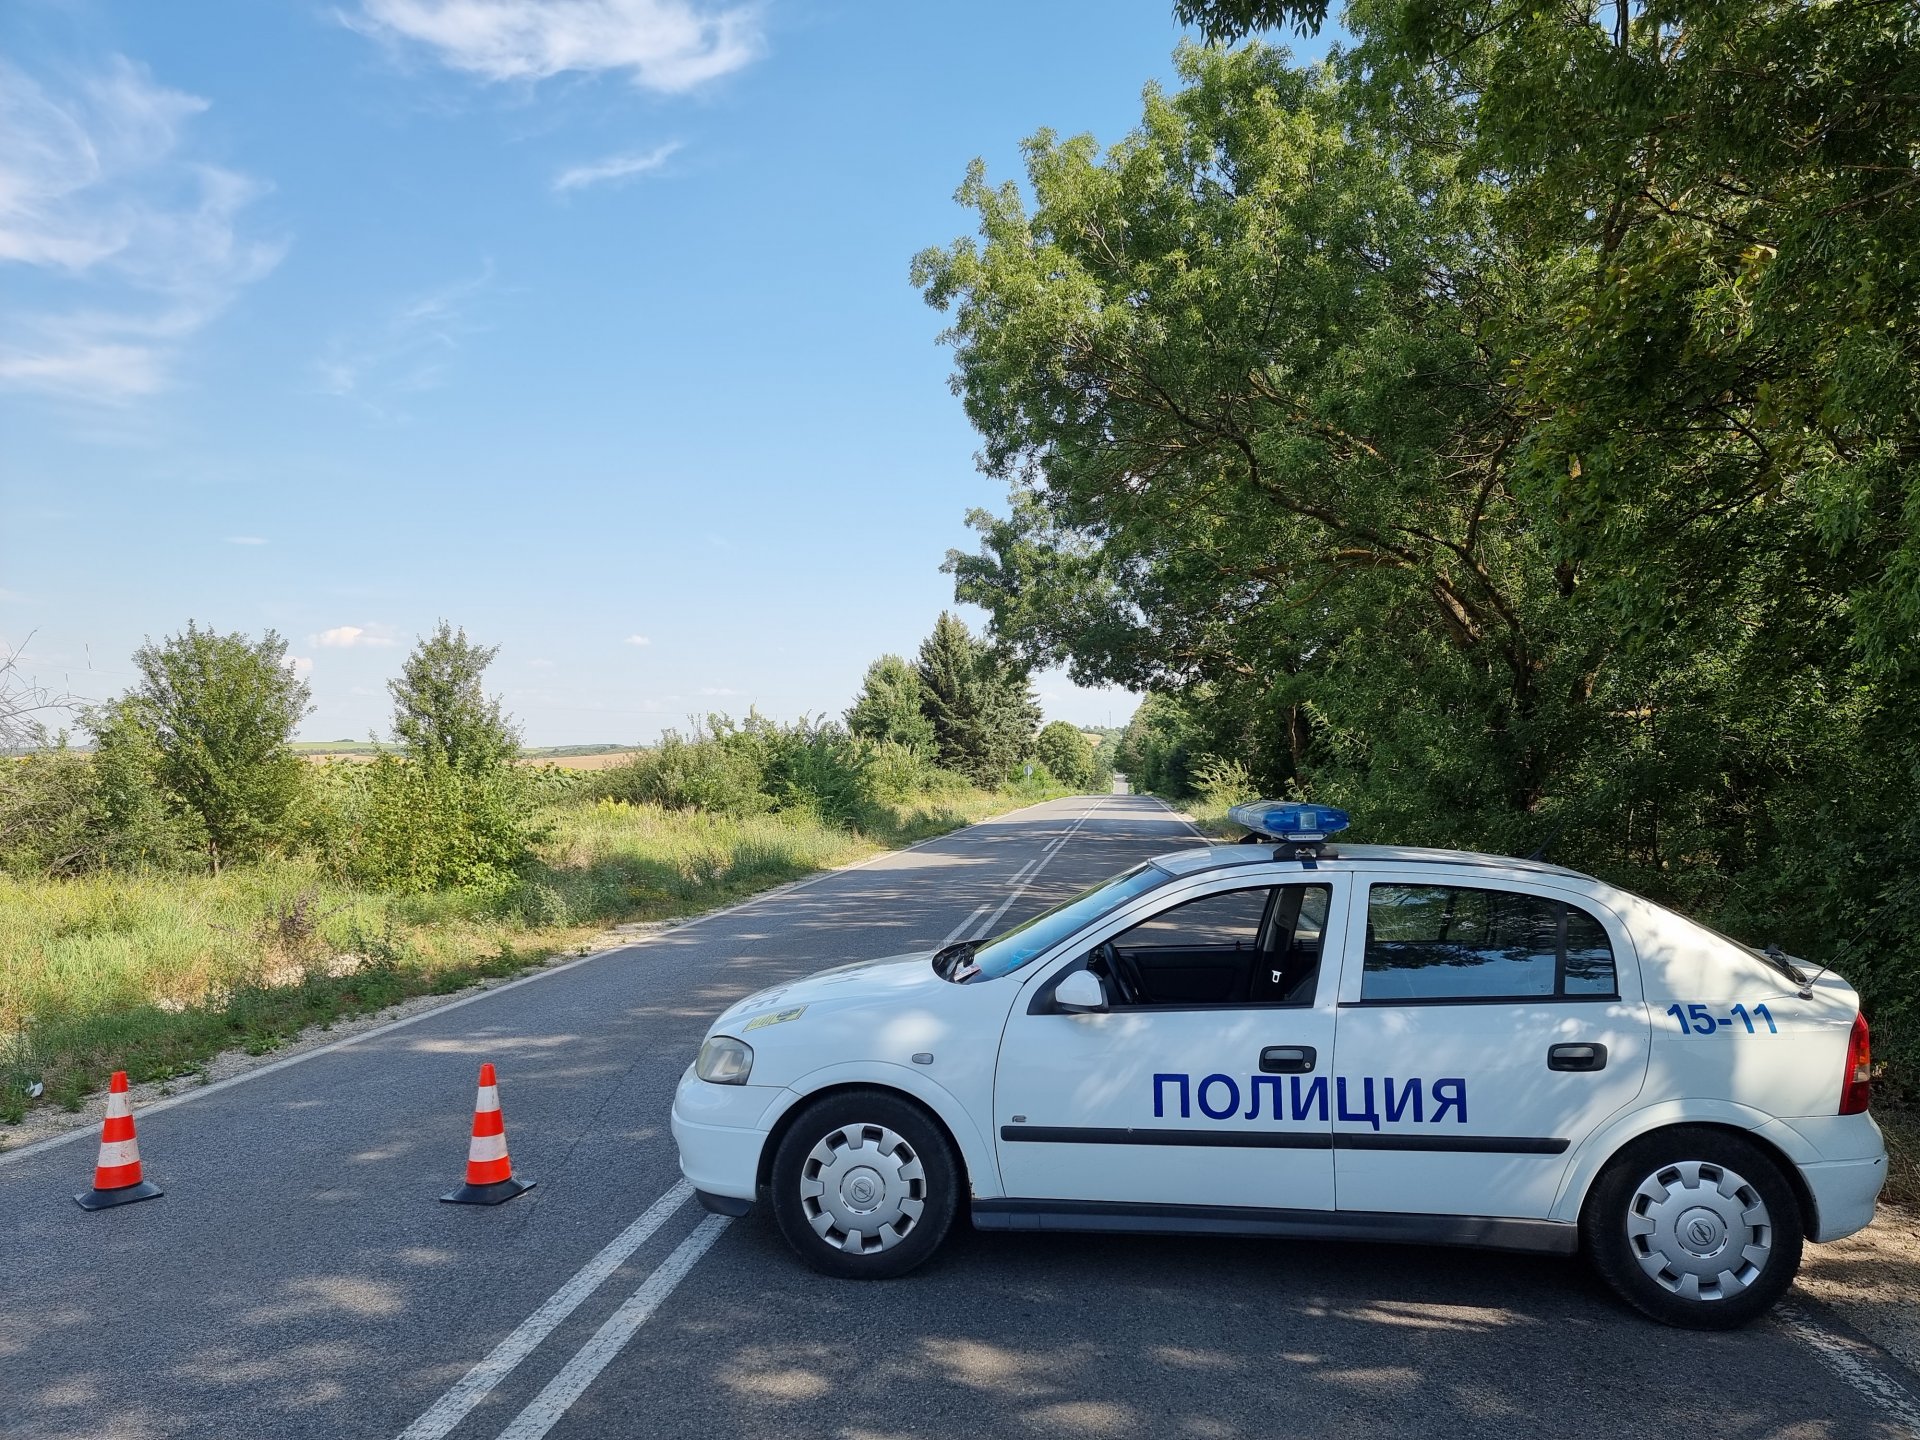 Непосредствено след получаване на сигнала са предприети заградителни мероприятия, при които на пътя между селата Водолей и Ресен са спрени три автомобили